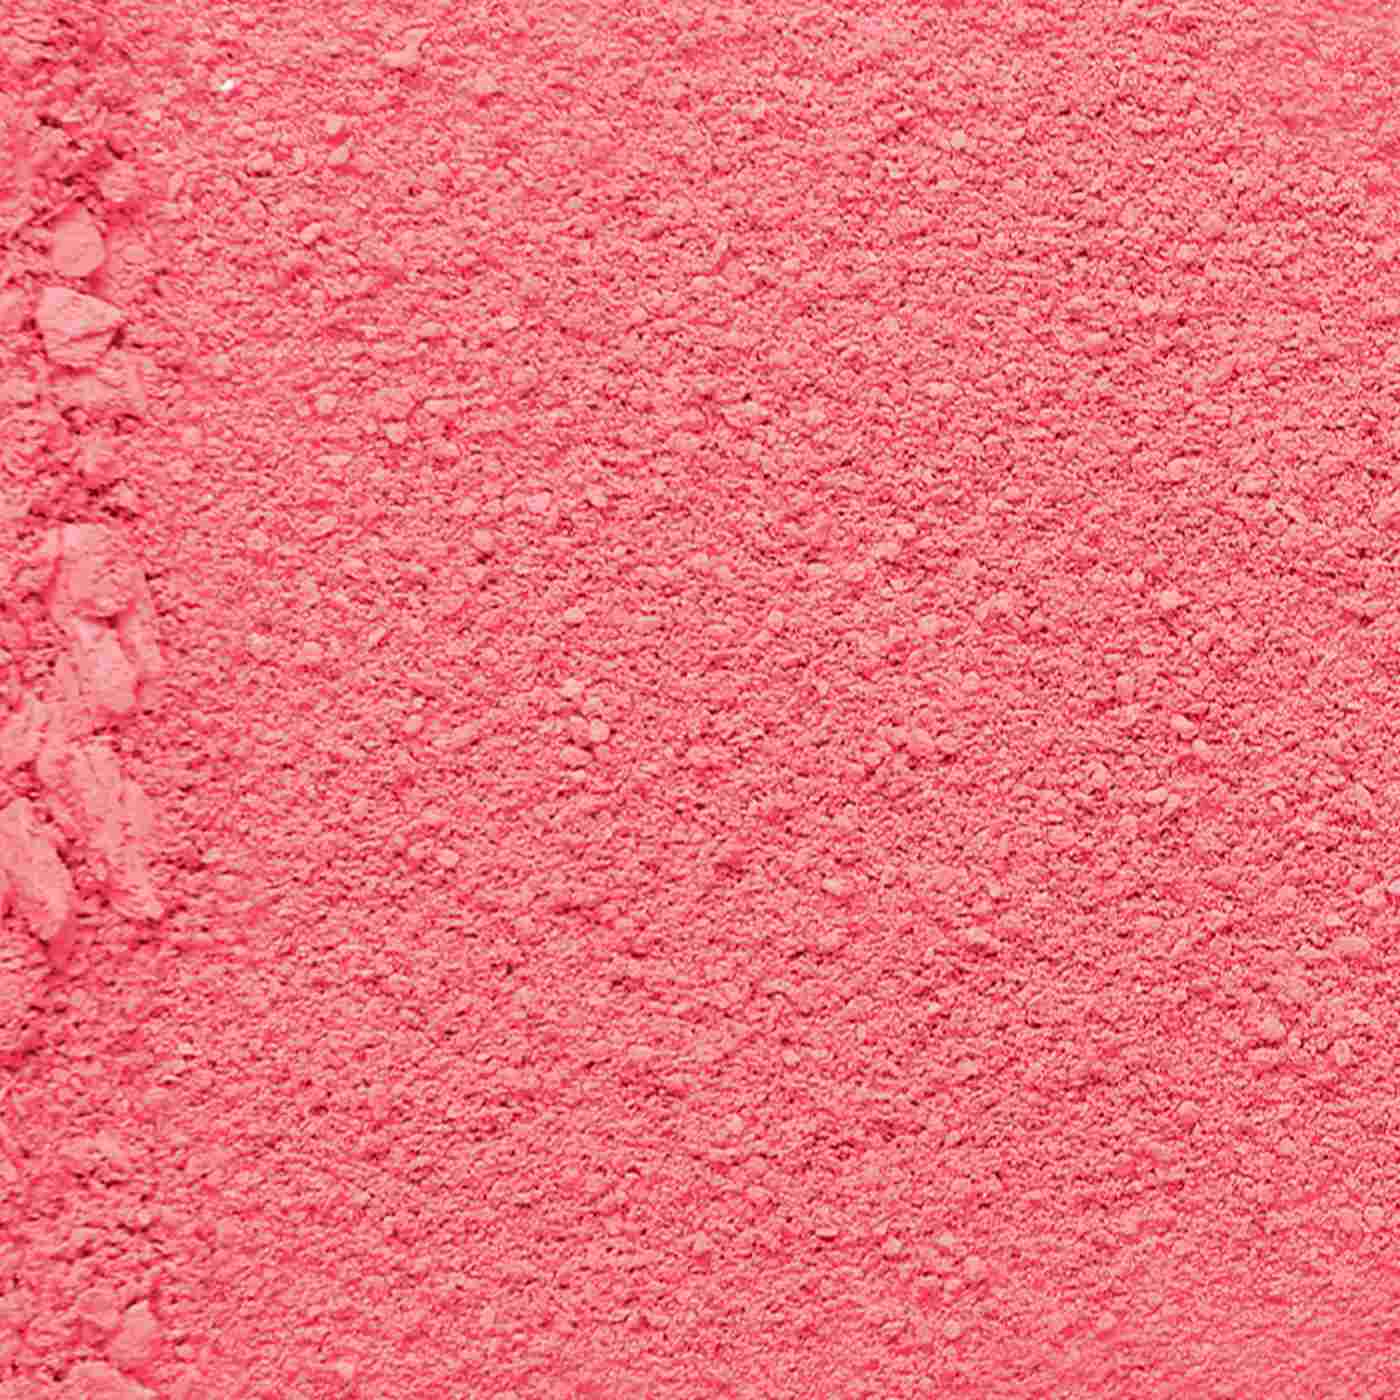 L'Oréal Paris Infallible 24H Fresh Wear Soft Matte Blush - Confident Pink; image 2 of 3